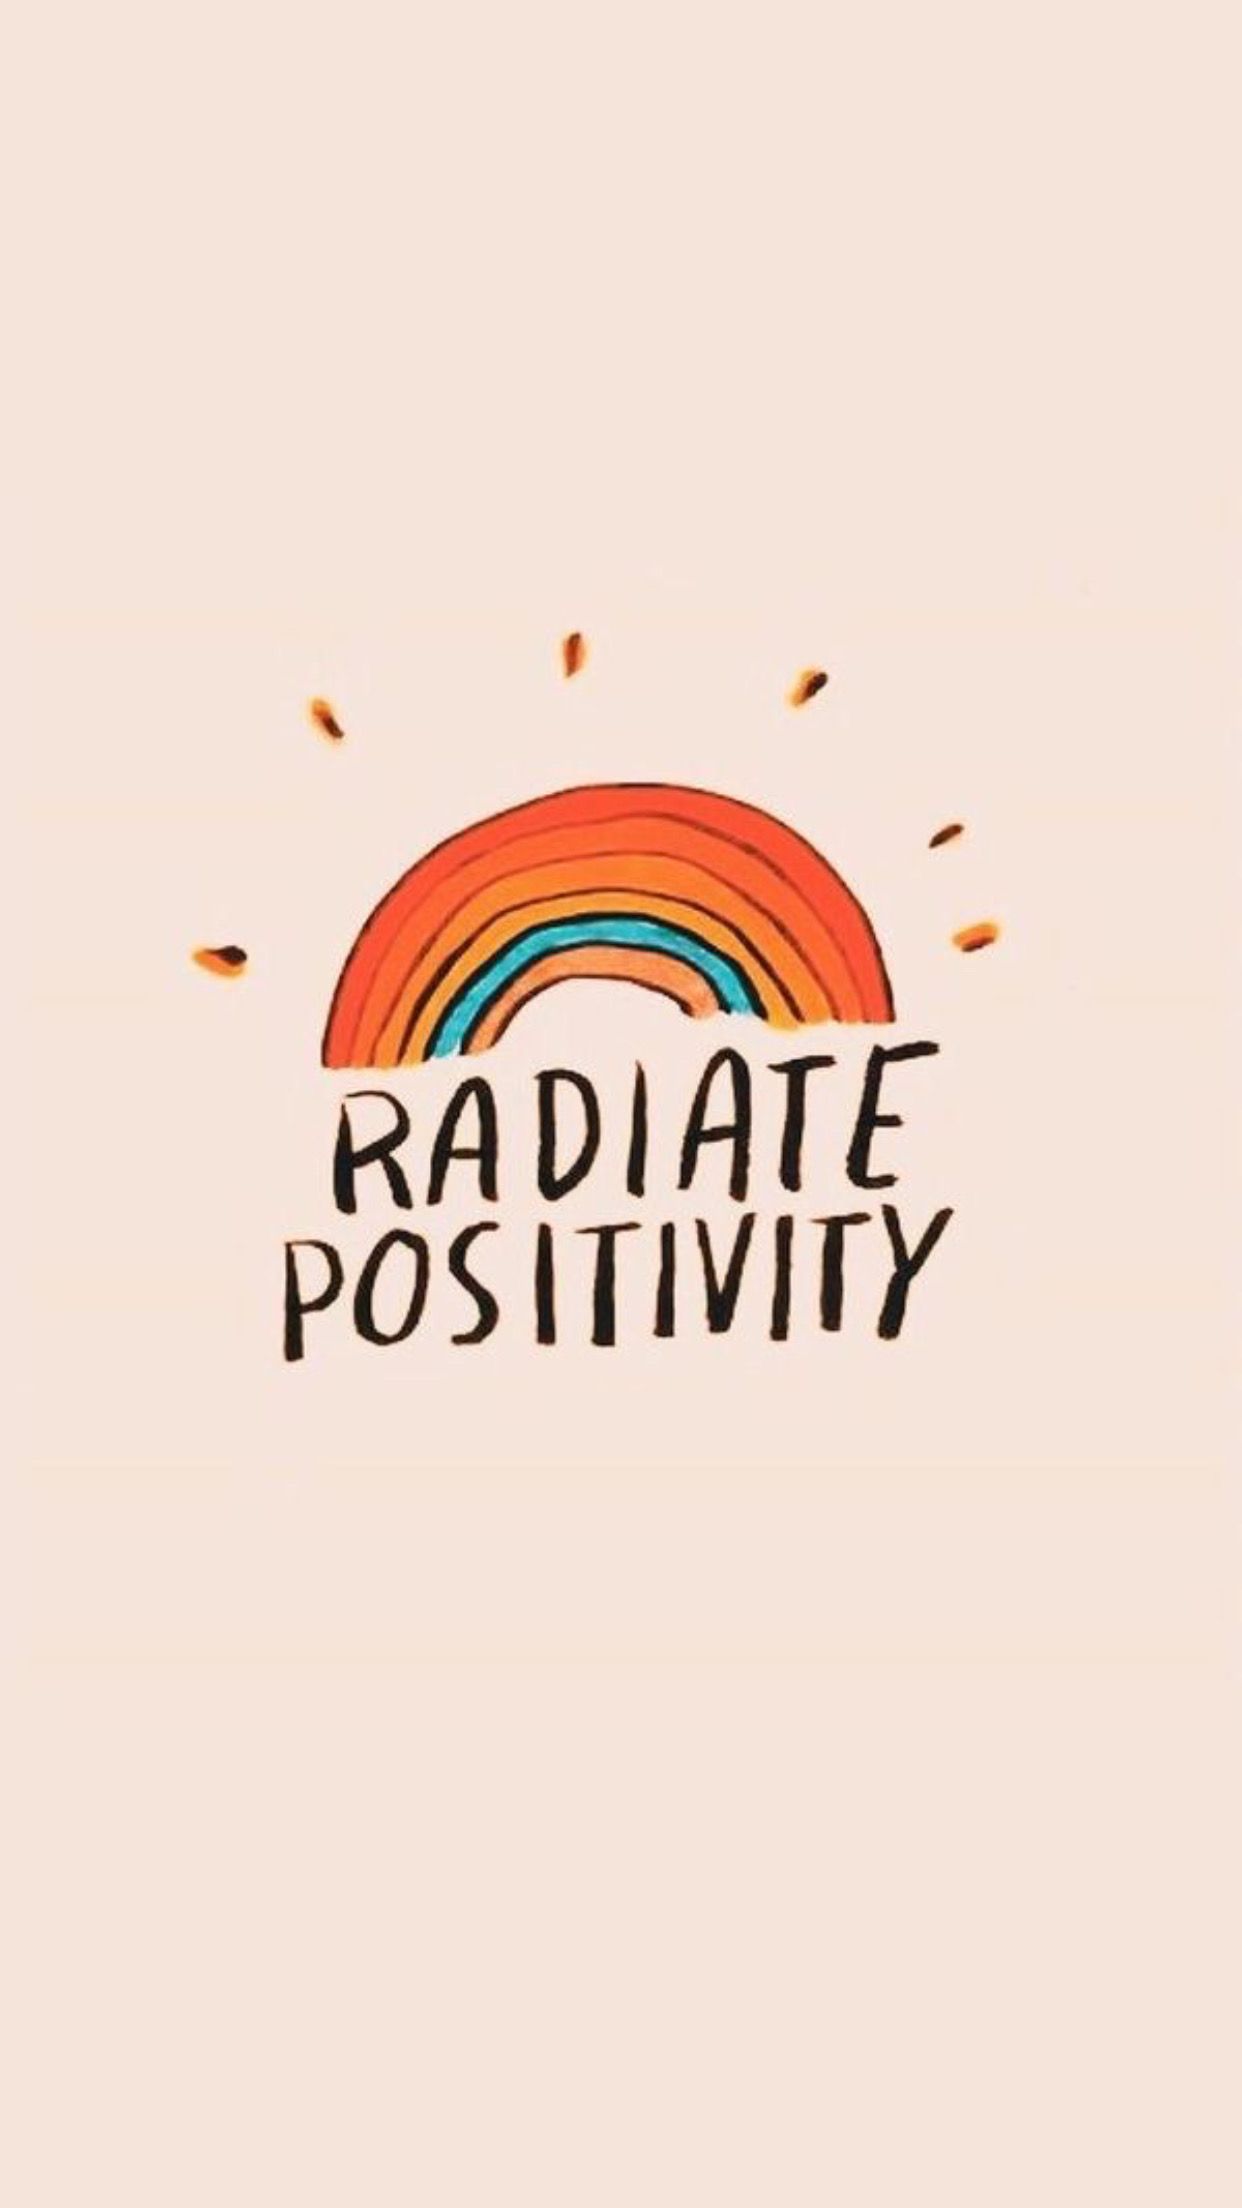 Positivity Background